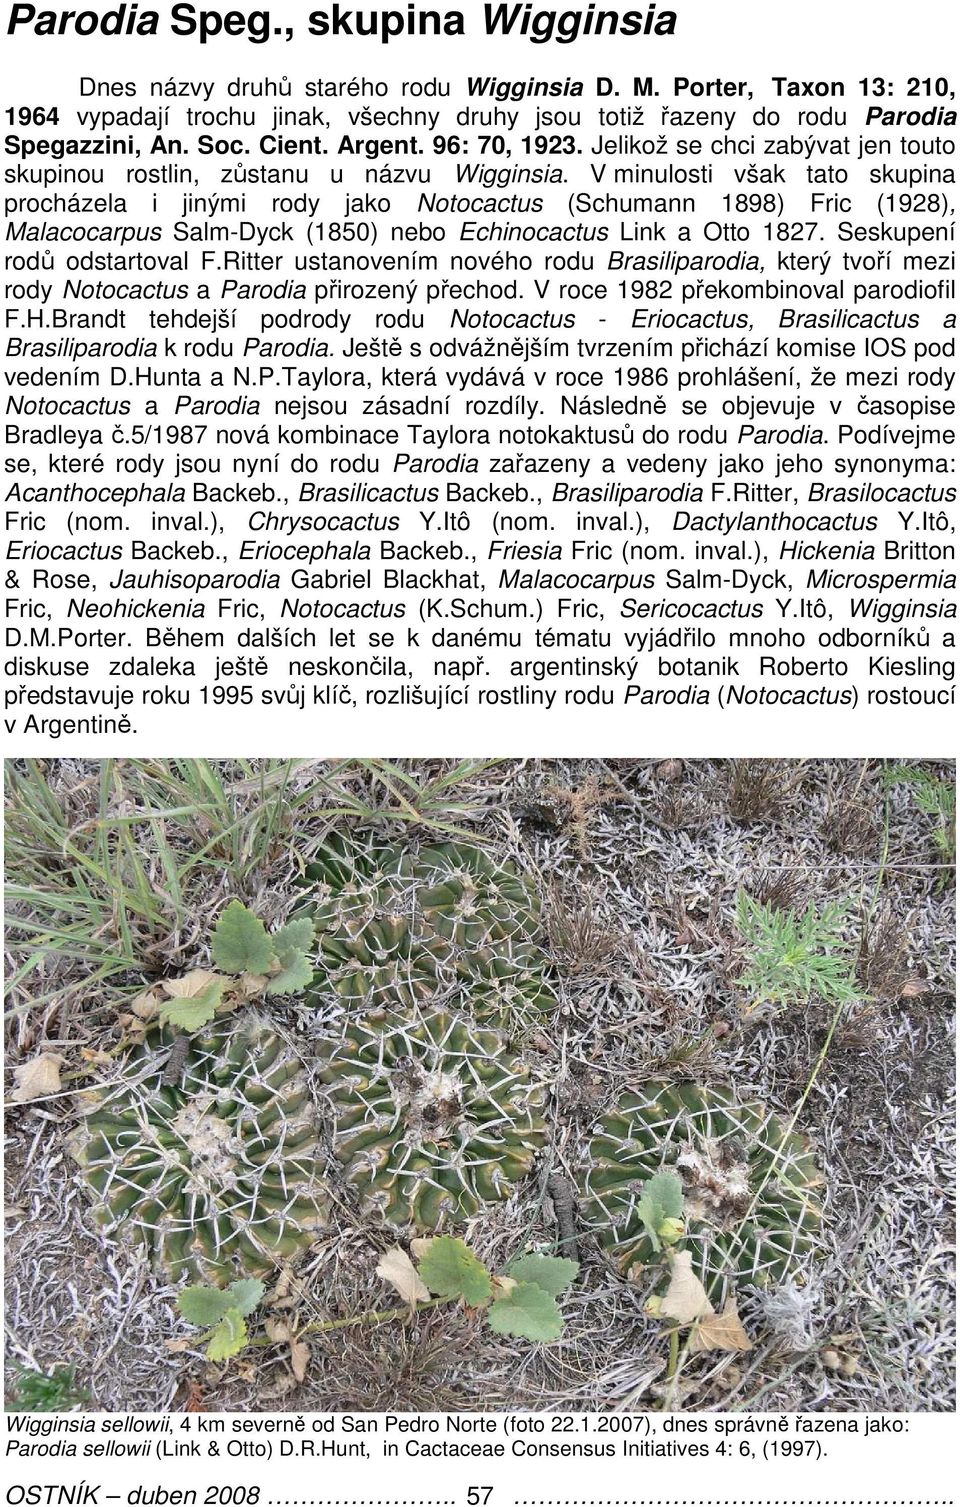 V minulosti však tato skupina procházela i jinými rody jako Notocactus (Schumann 1898) Fric (1928), Malacocarpus Salm-Dyck (1850) nebo Echinocactus Link a Otto 1827. Seskupení rodů odstartoval F.